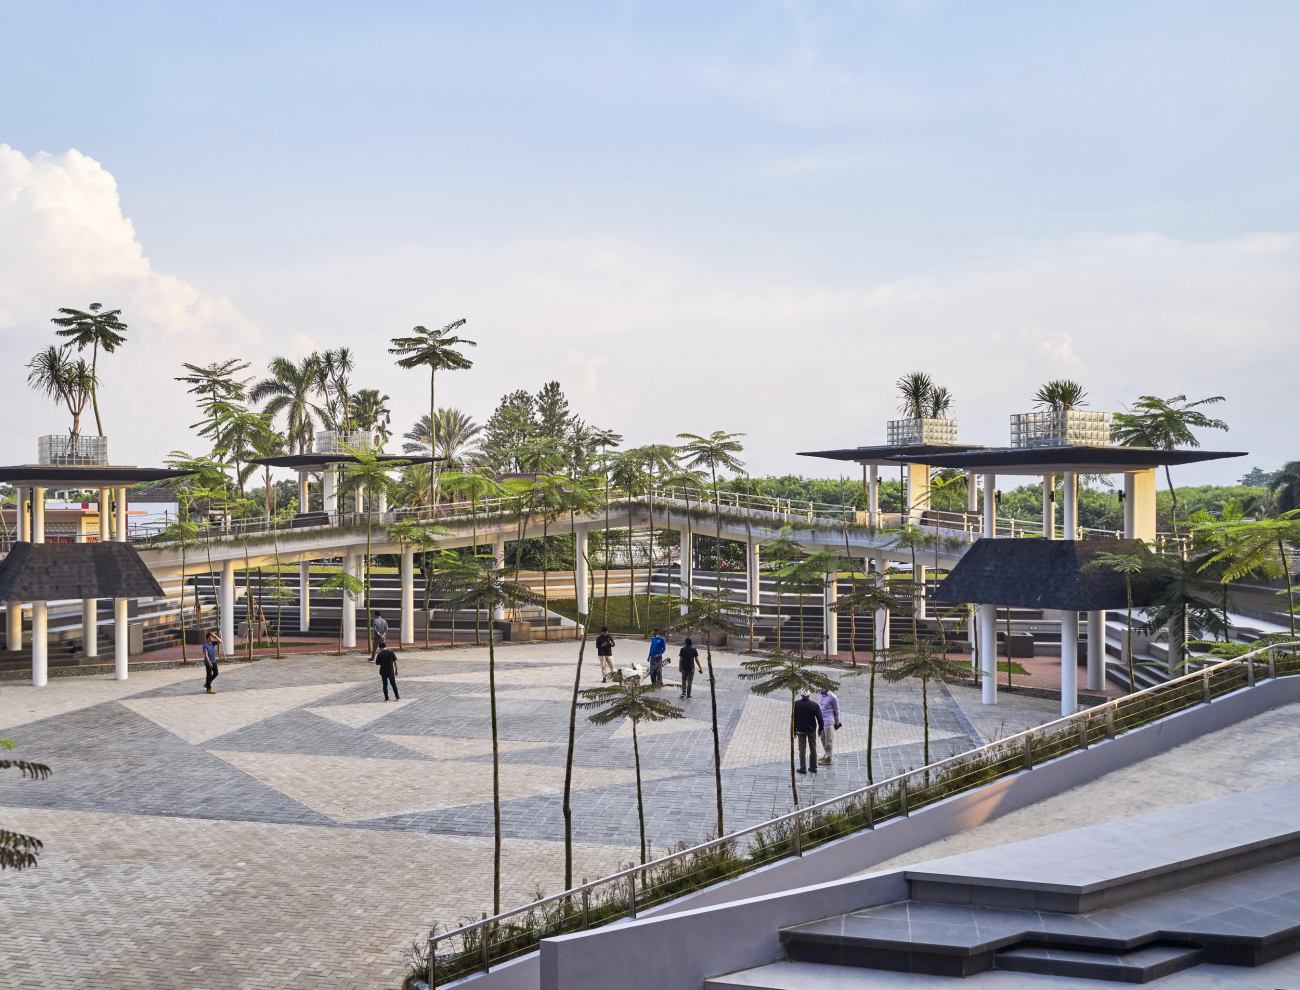 印度尼西亚Alun-alun Kejaksan 广场-SHAU Indonesia-广场案例-筑龙园林景观论坛